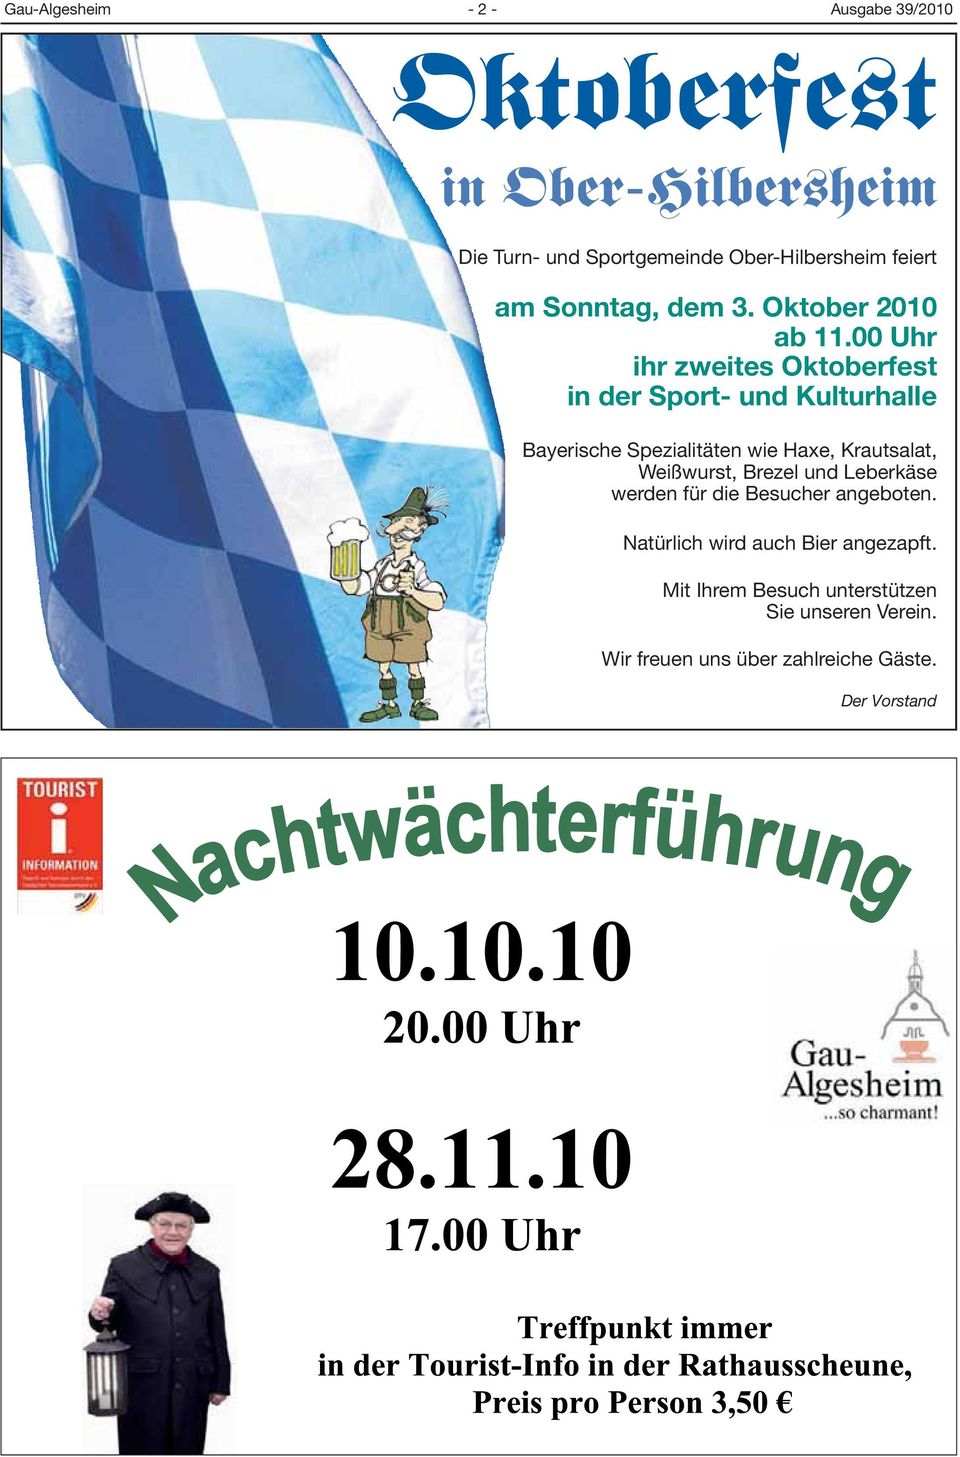 00 Uhr ihr zweites Oktoberfest in der Sport- und Kulturhalle Bayerische Spezialitäten wie Haxe, Krautsalat,